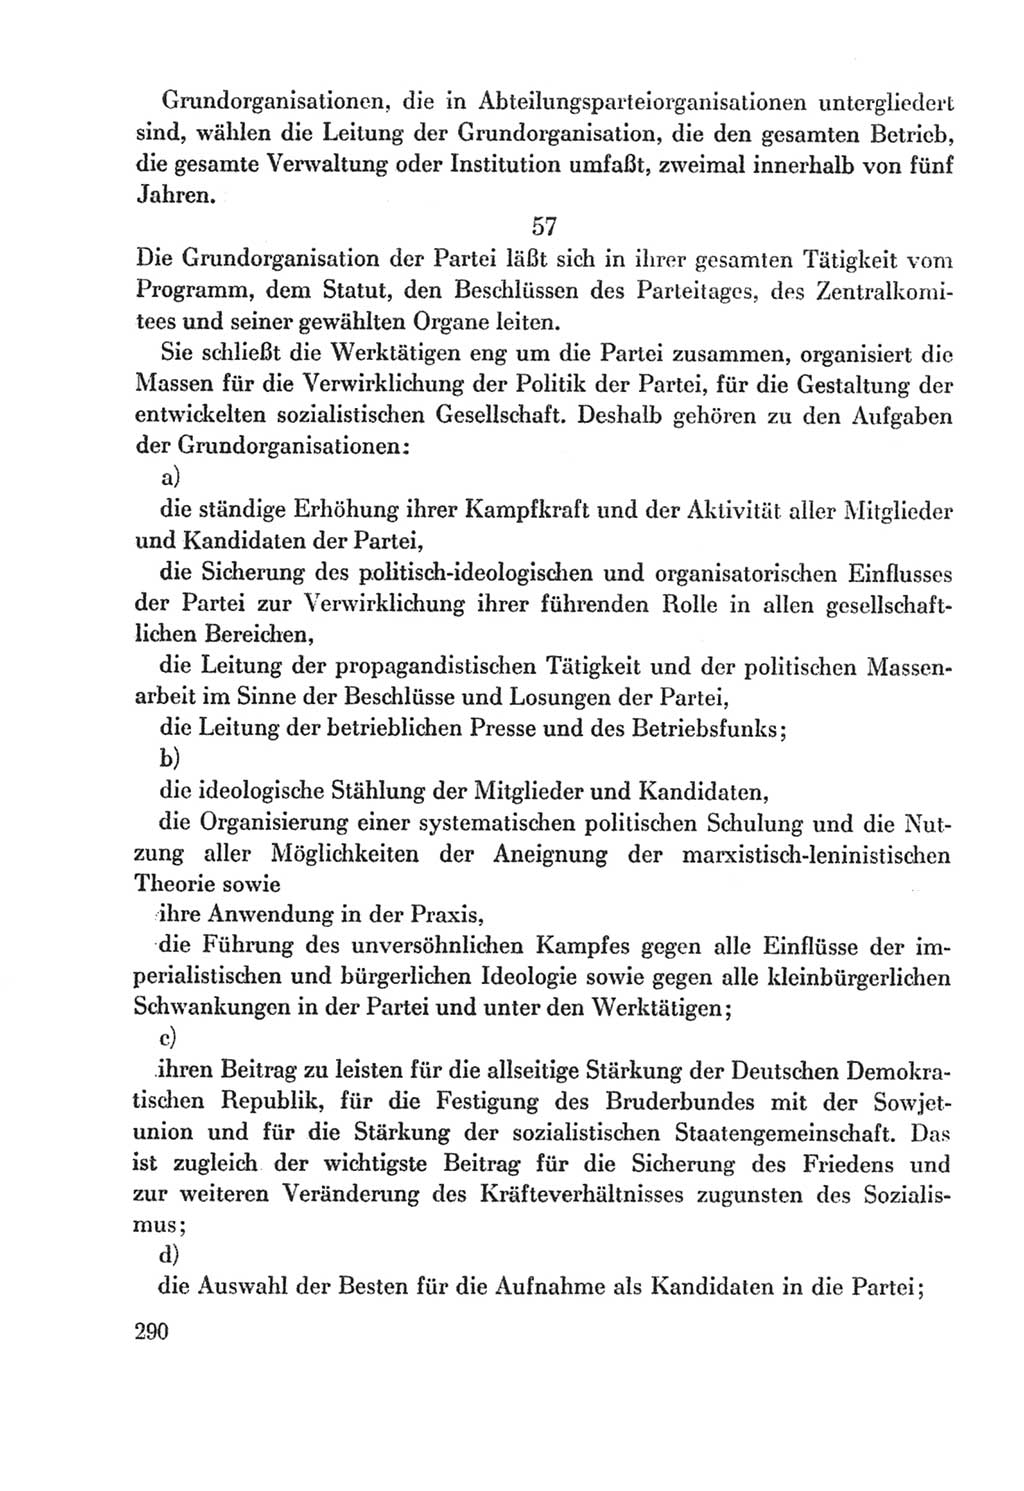 Protokoll der Verhandlungen des Ⅸ. Parteitages der Sozialistischen Einheitspartei Deutschlands (SED) [Deutsche Demokratische Republik (DDR)] 1976, Band 2, Seite 290 (Prot. Verh. Ⅸ. PT SED DDR 1976, Bd. 2, S. 290)